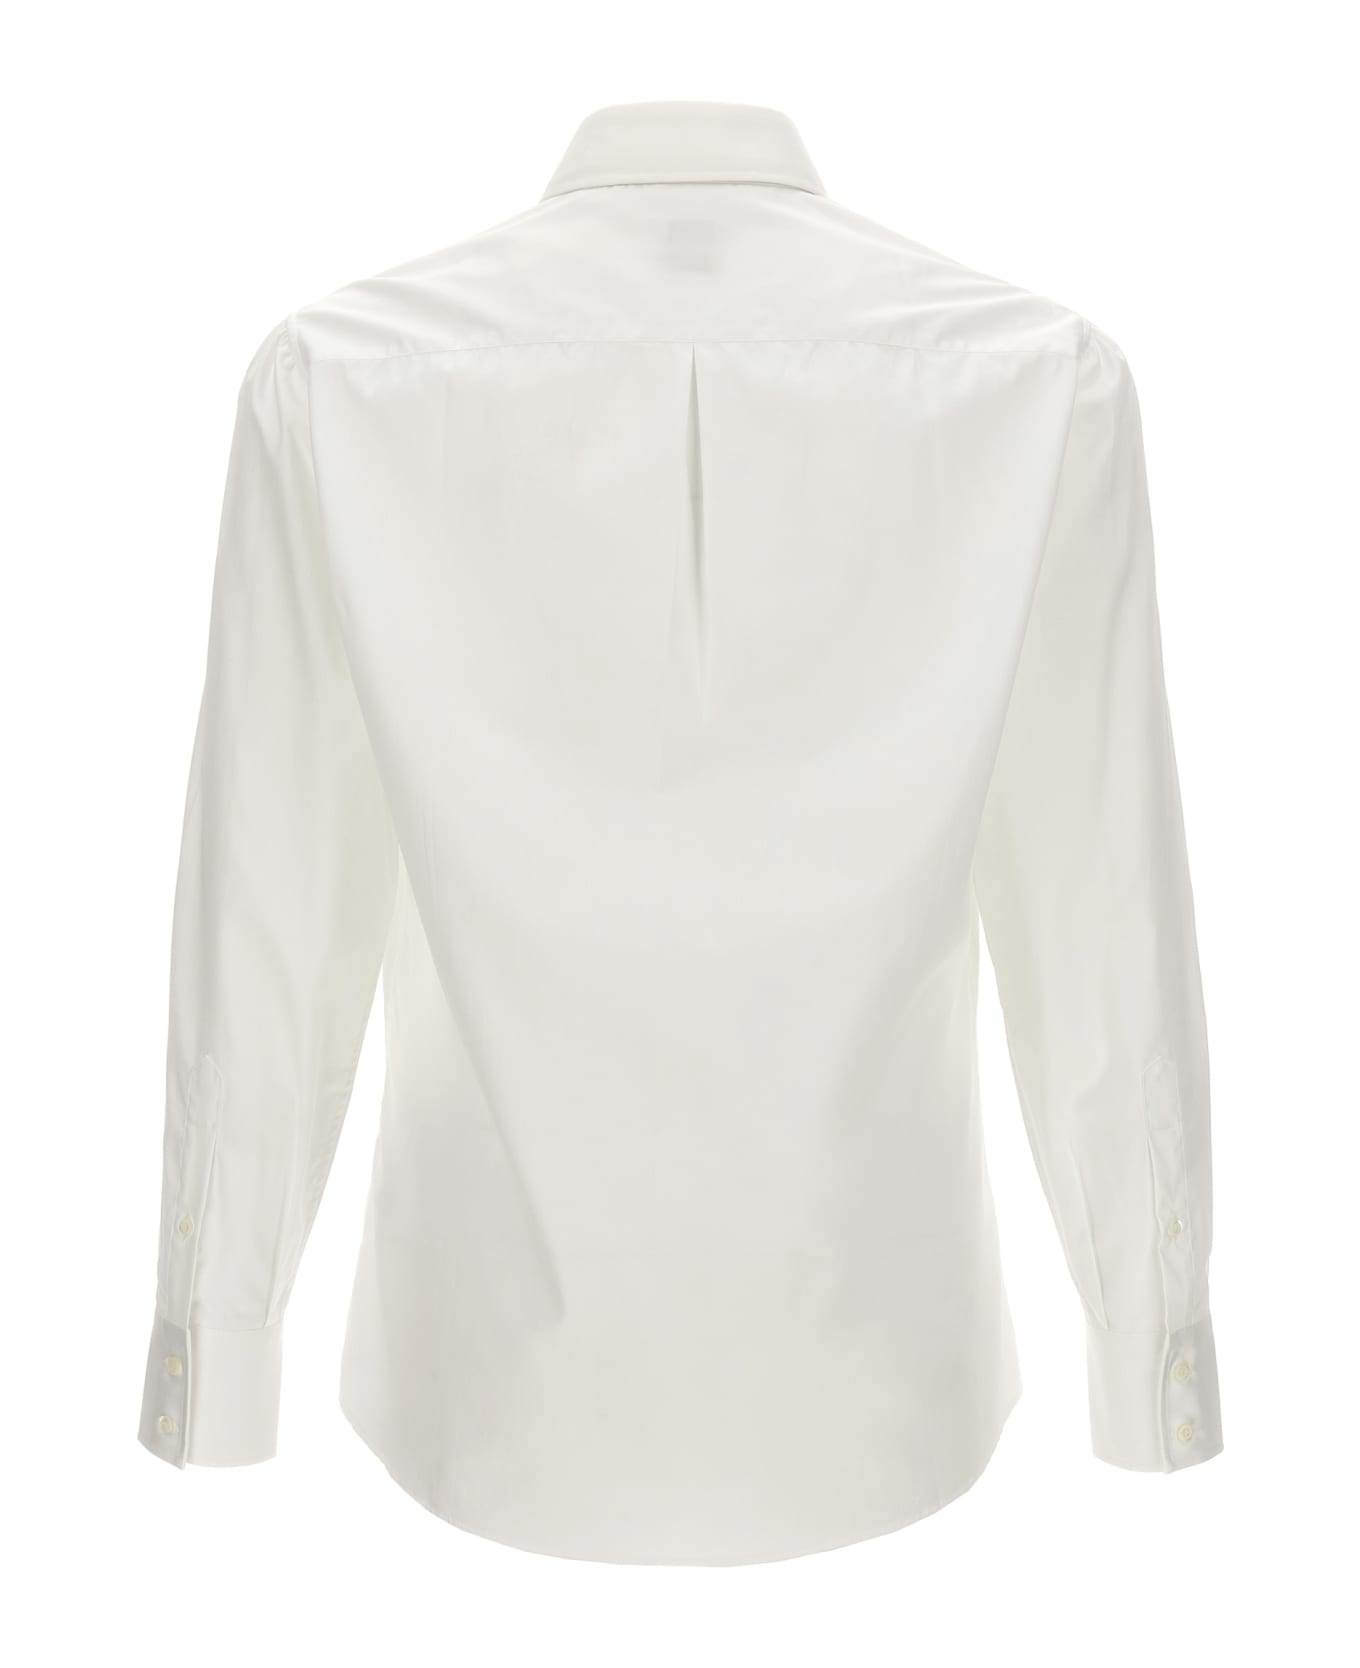 Brunello Cucinelli Poplin Shirt - White シャツ